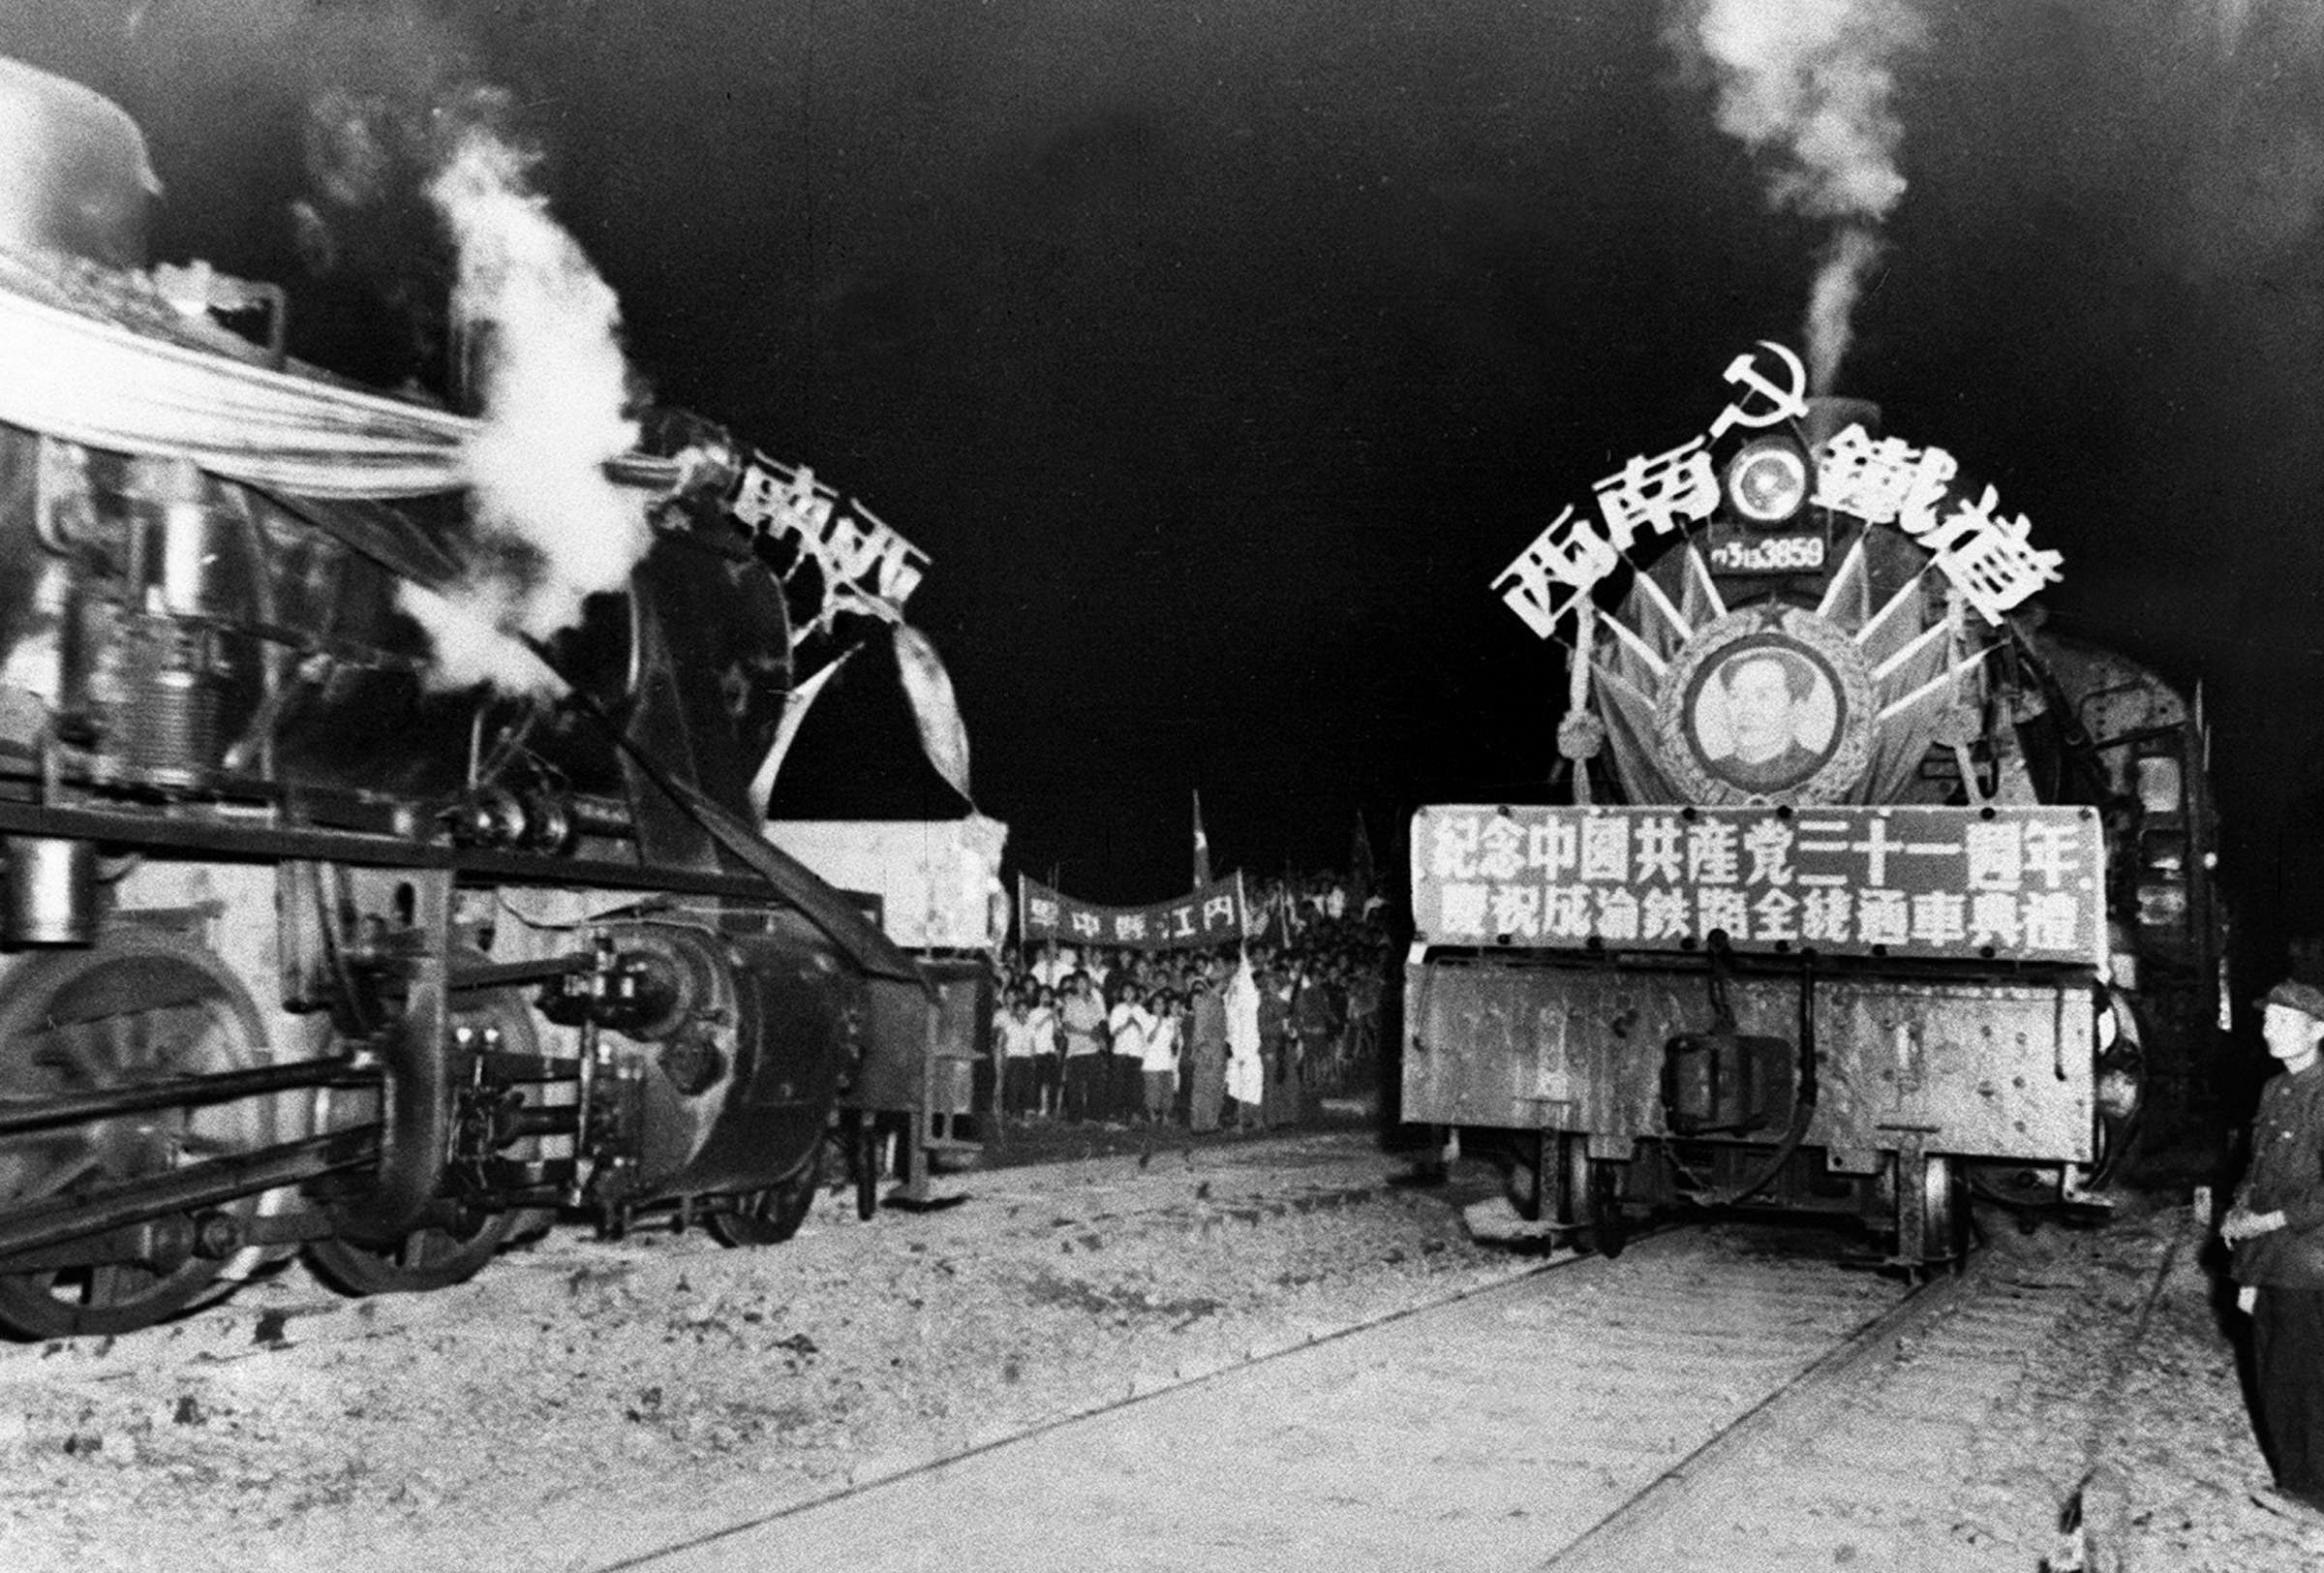 拼版照片:上图为1951年11月底完工的成渝铁路沱江大桥(资料照片